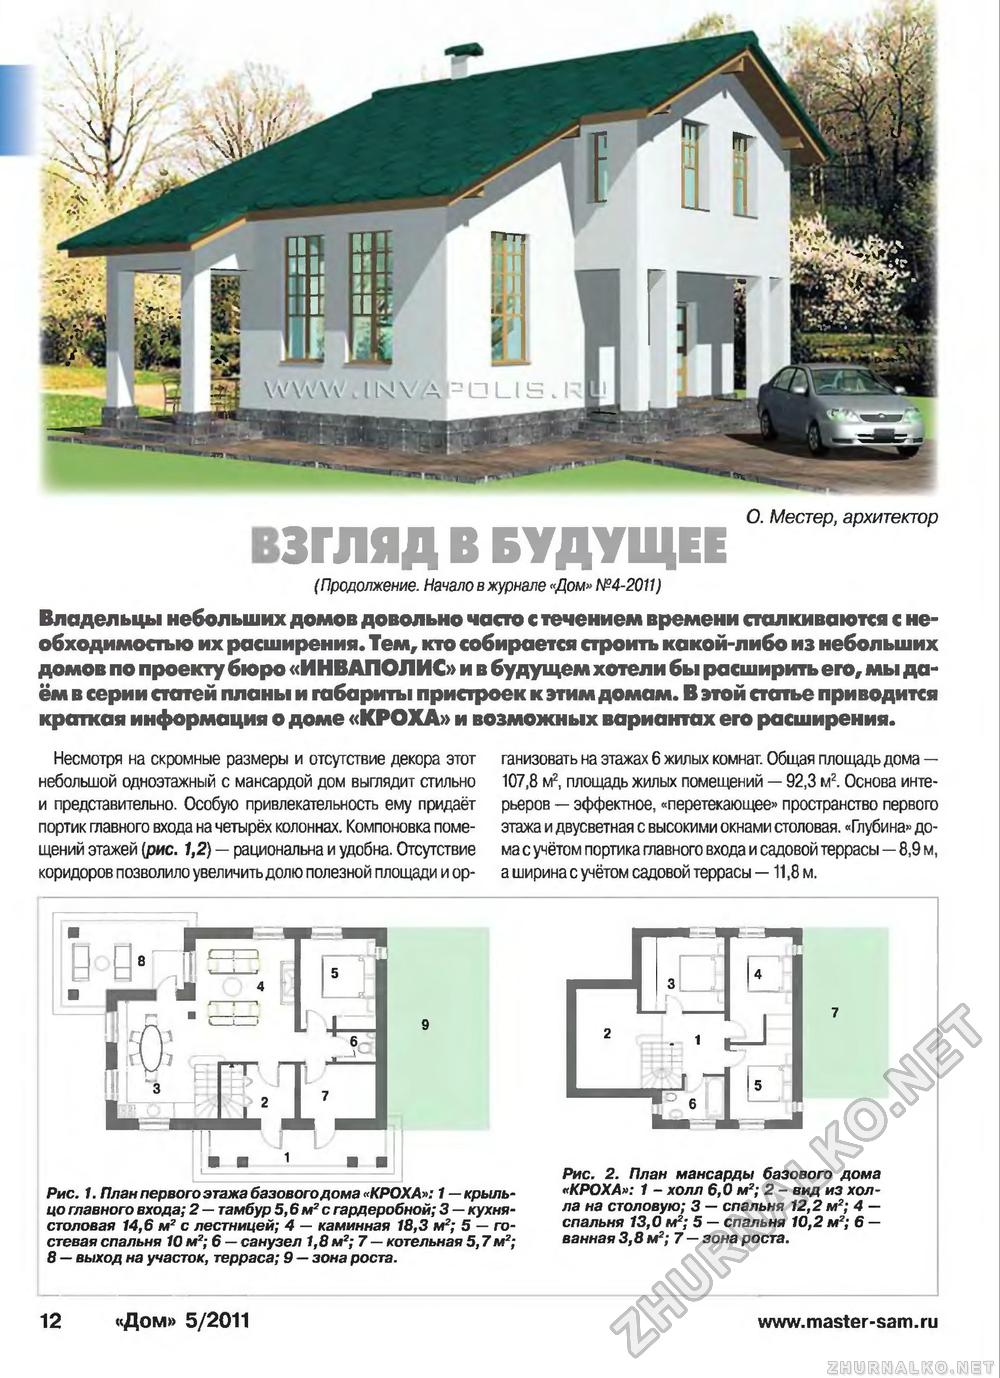 Дом 2011-05, страница 12